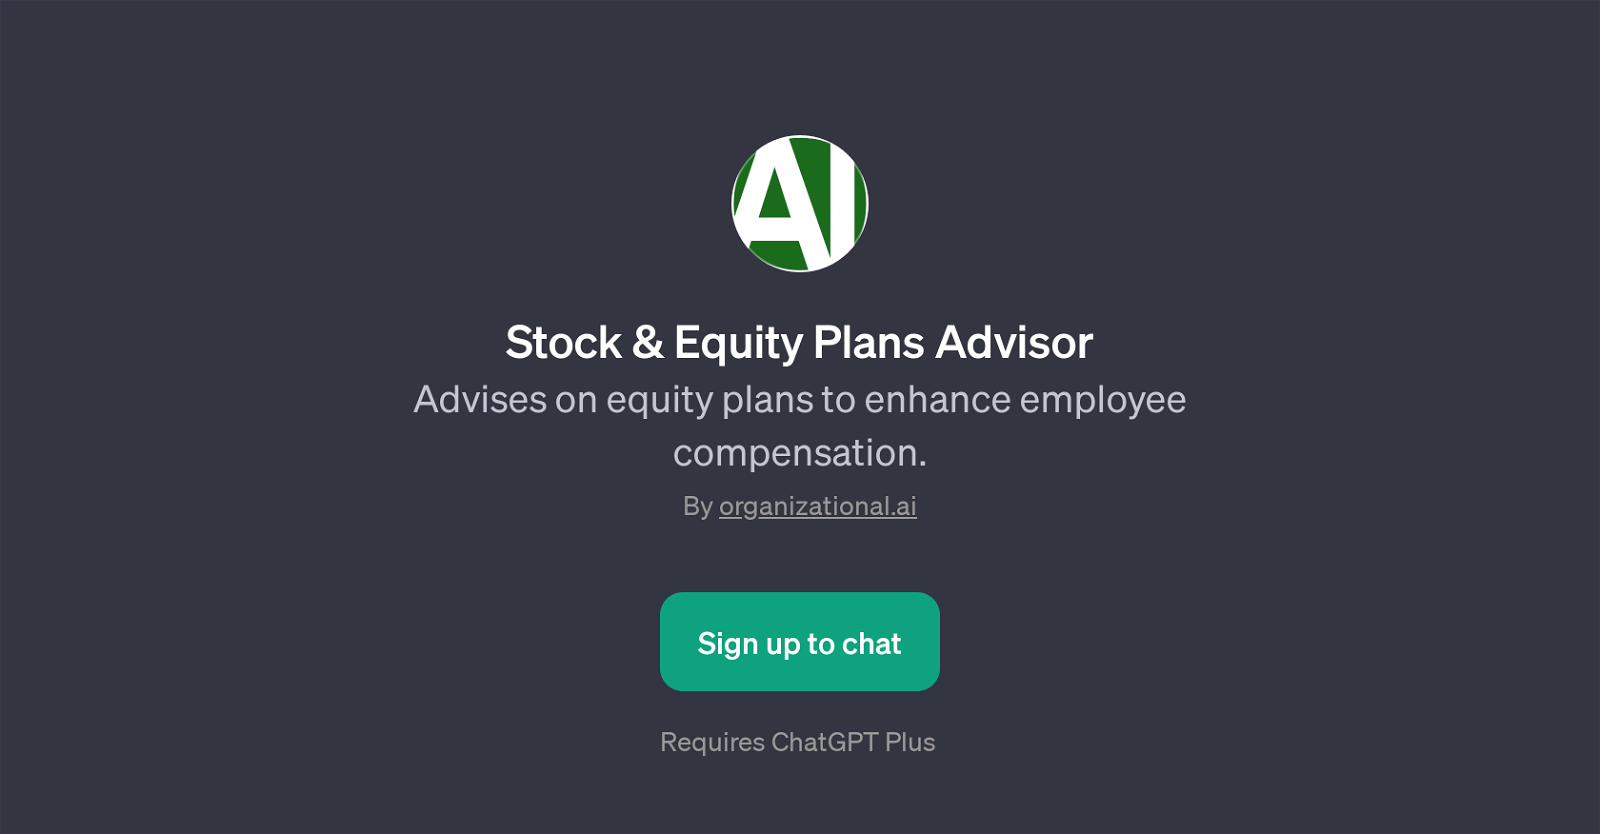 Stock & Equity Plans Advisor website